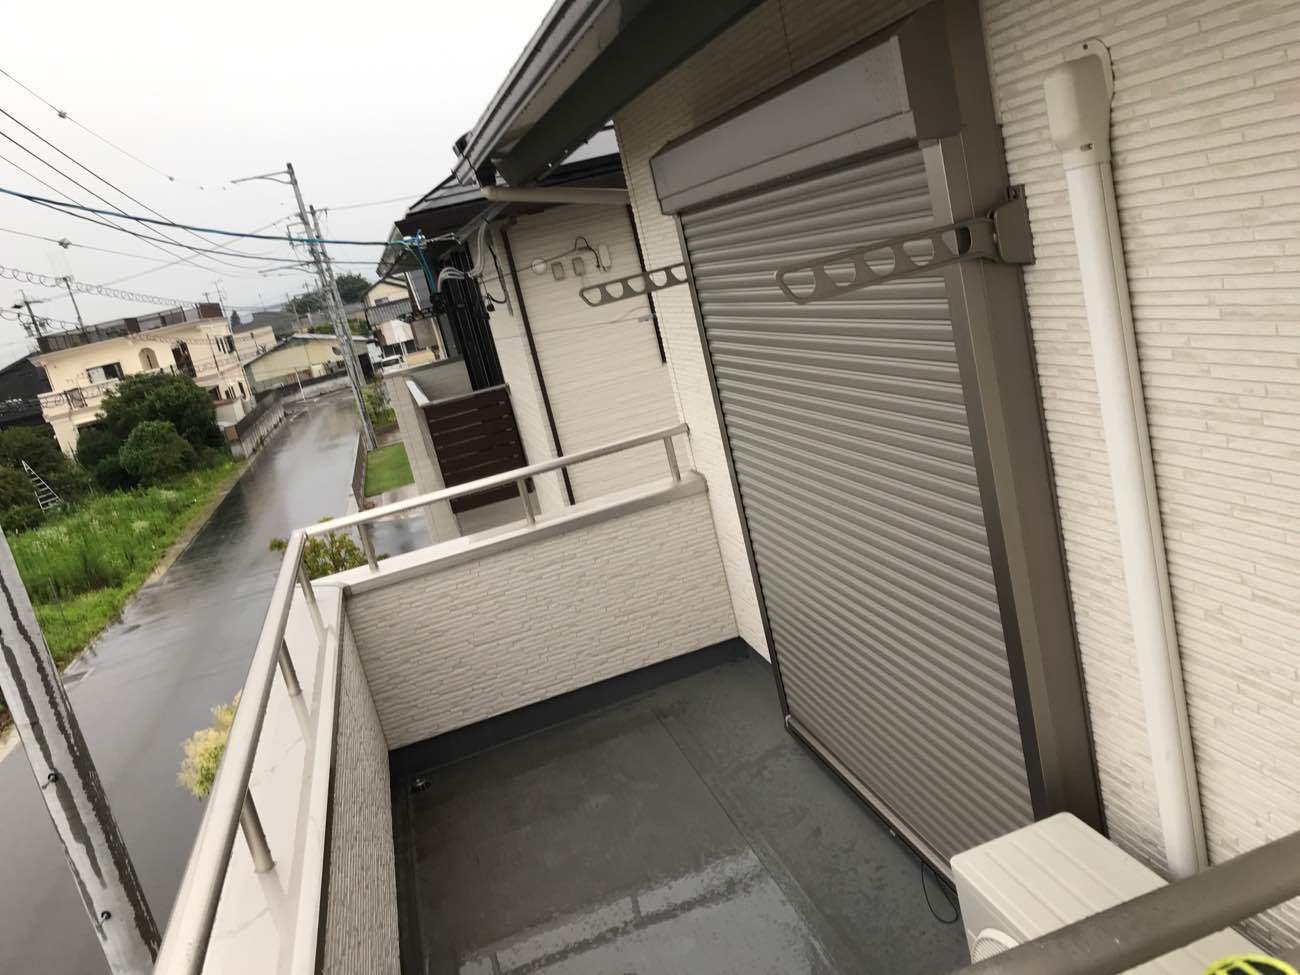 暴風雨に備え2階にもシャッターを設置！浜松市での防災シャッターの施工事例。 アイキャッチ画像